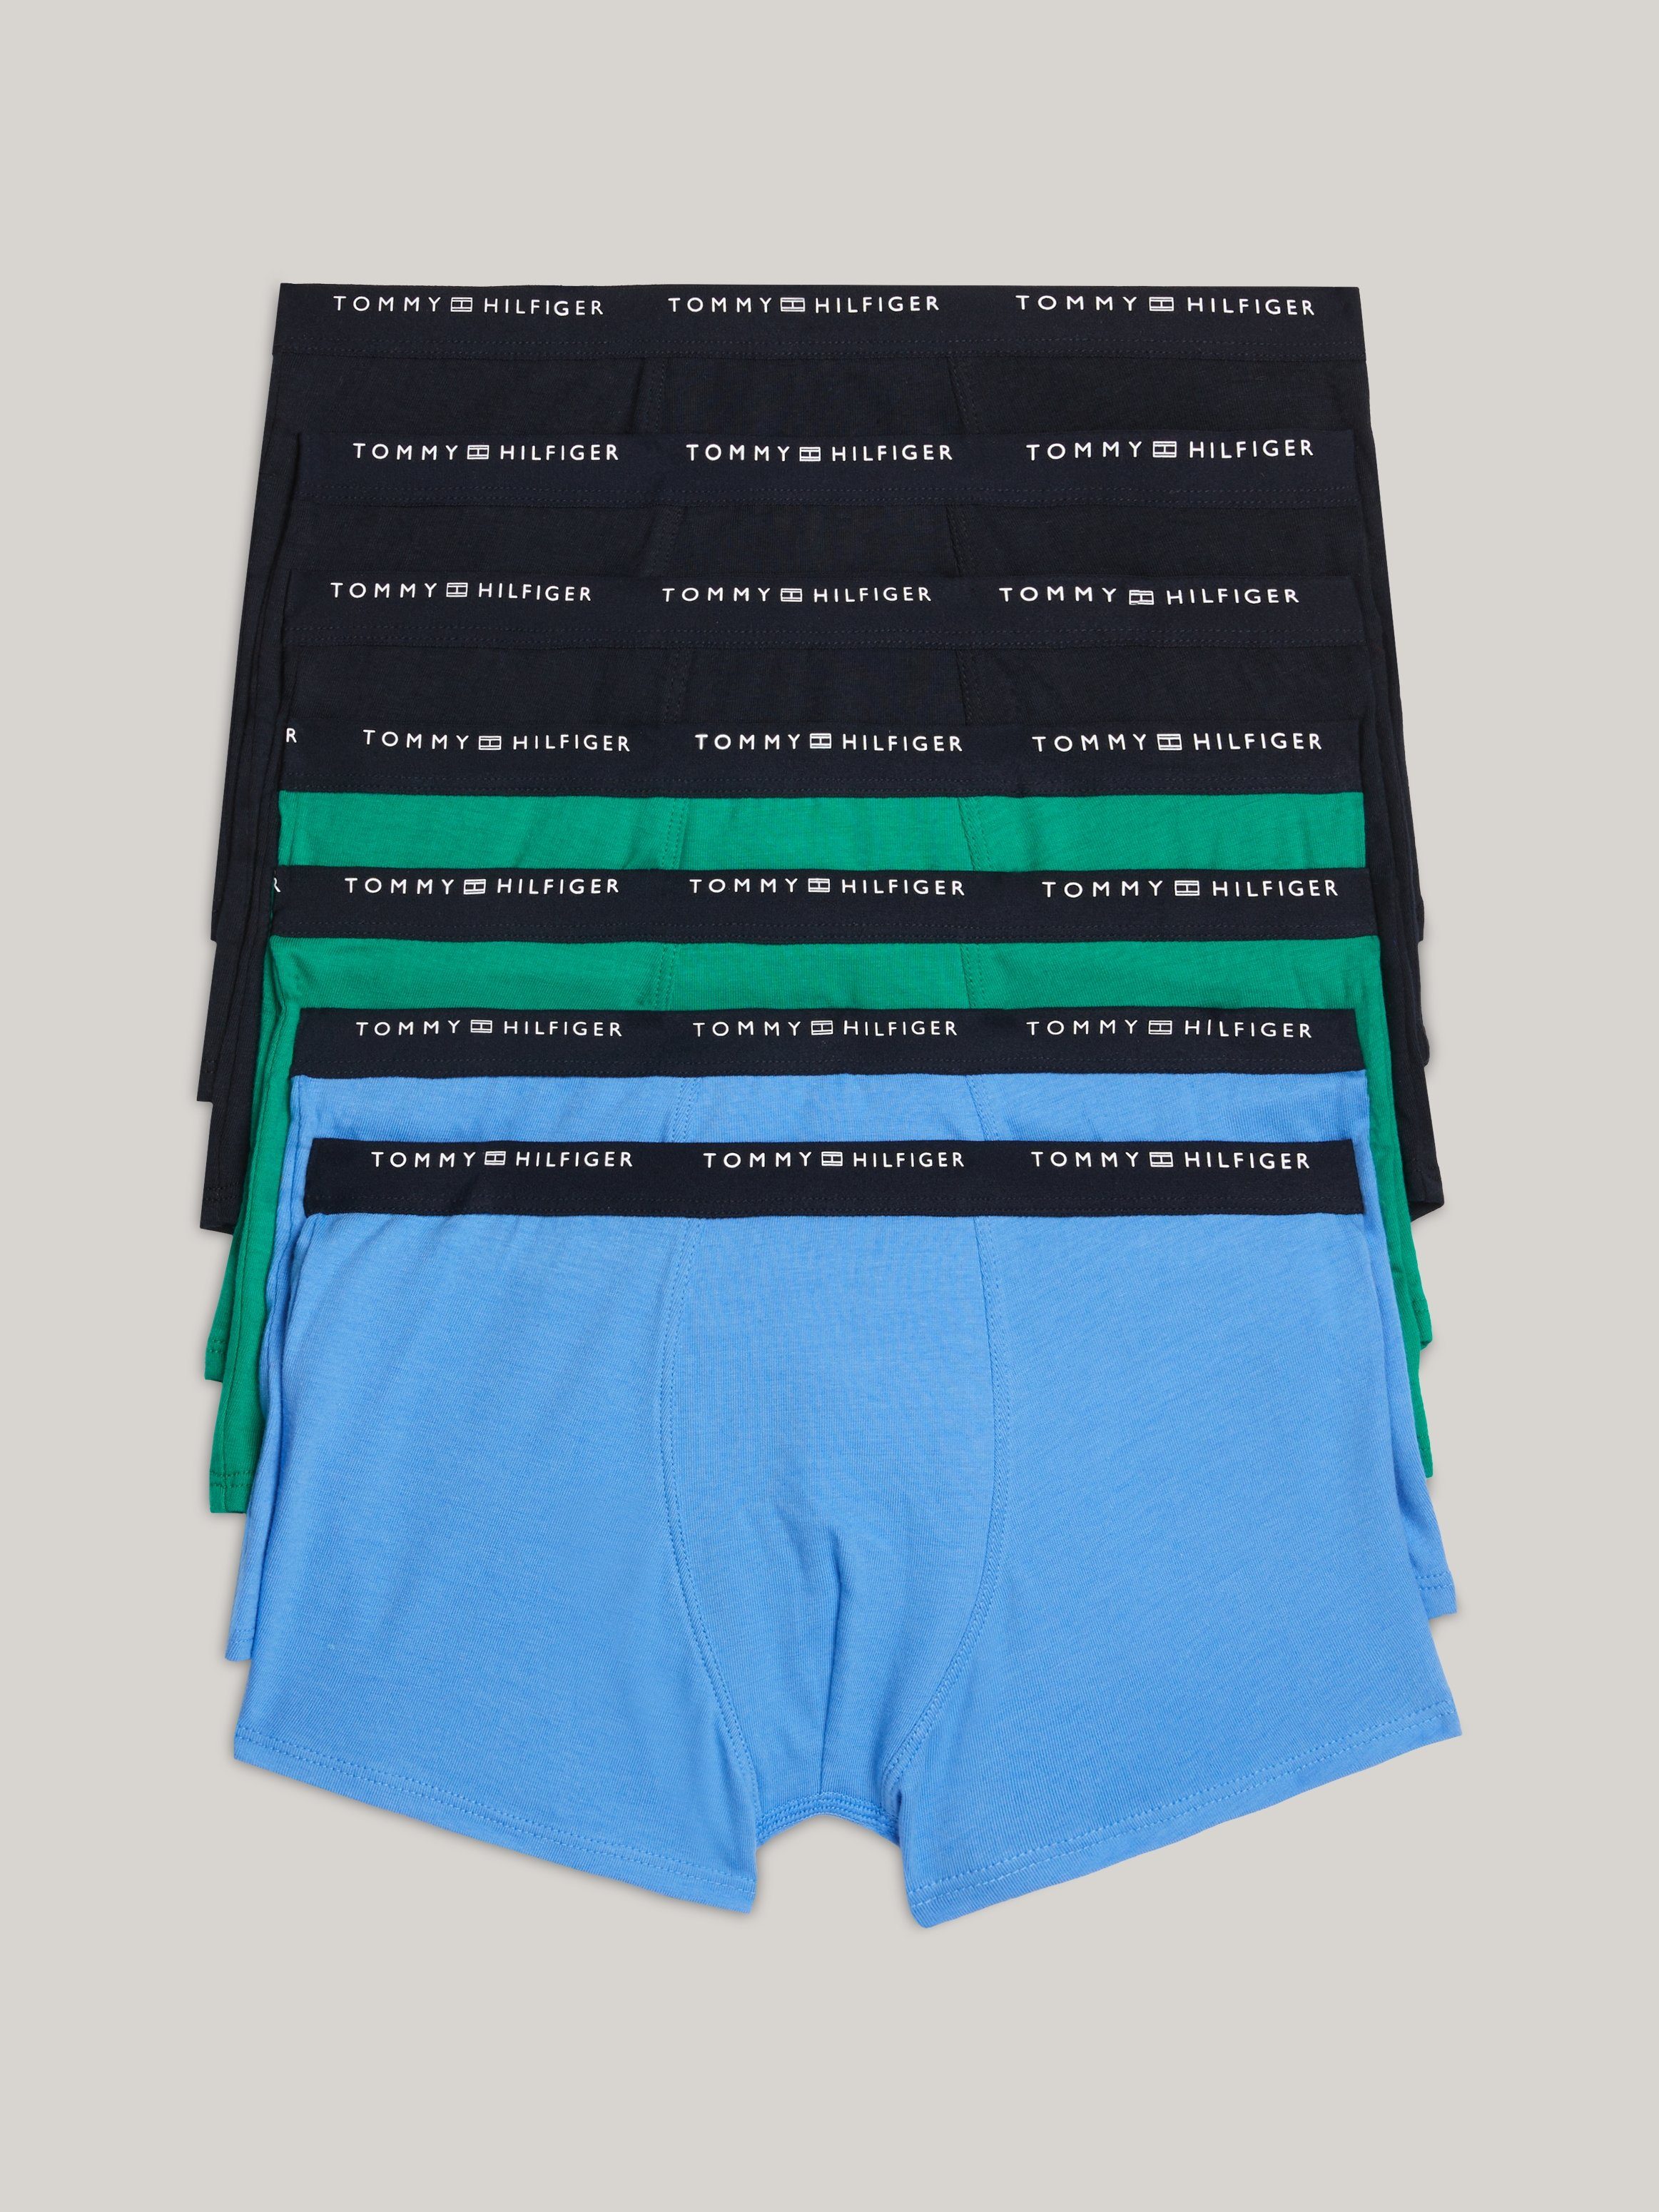 Tommy Hilfiger boxershort set van 7 blauw groen zwart Multi Jongens Stretchkatoen 152-164